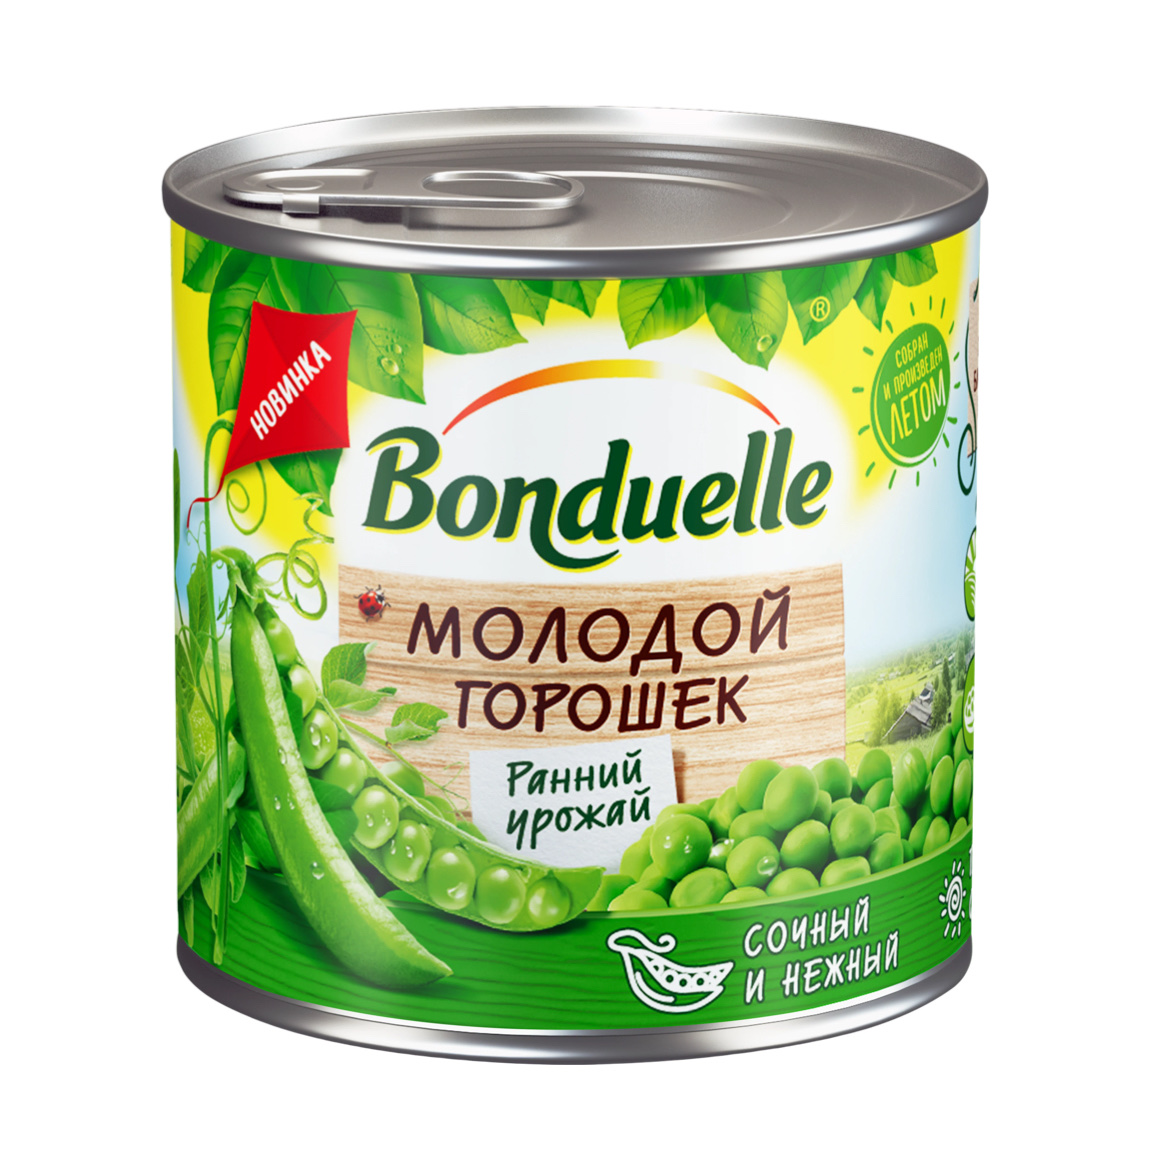 Горошек Бондюэль МОЛОДОЙ зеленый 212 мл